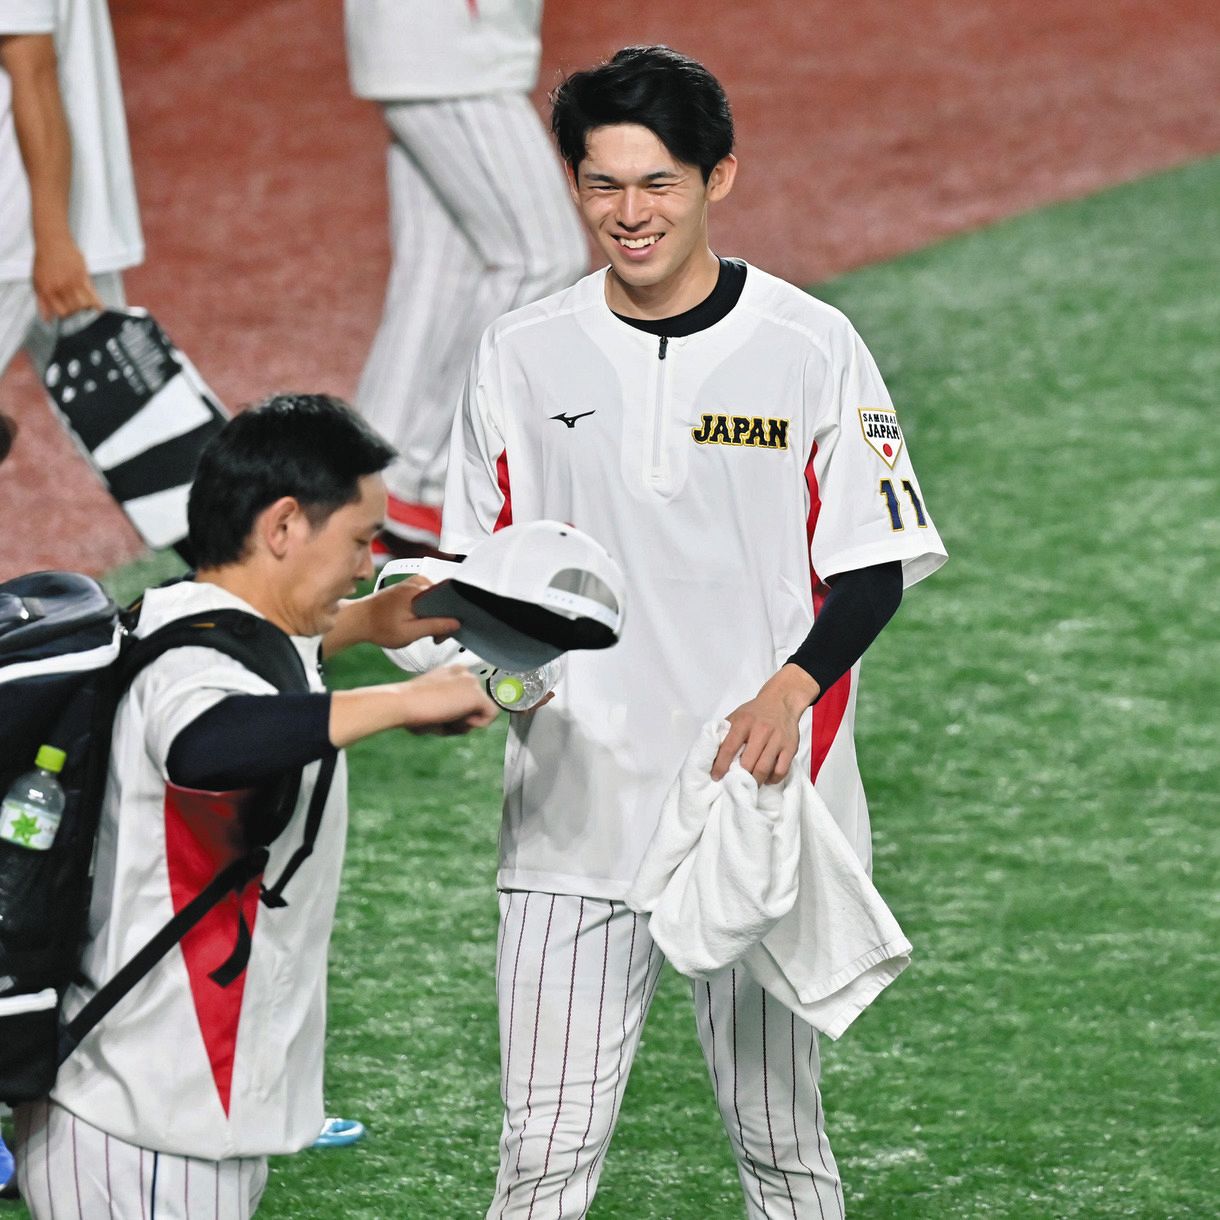 高品質特価品 日本代表佐々木朗希選手のユニフォーム - 野球